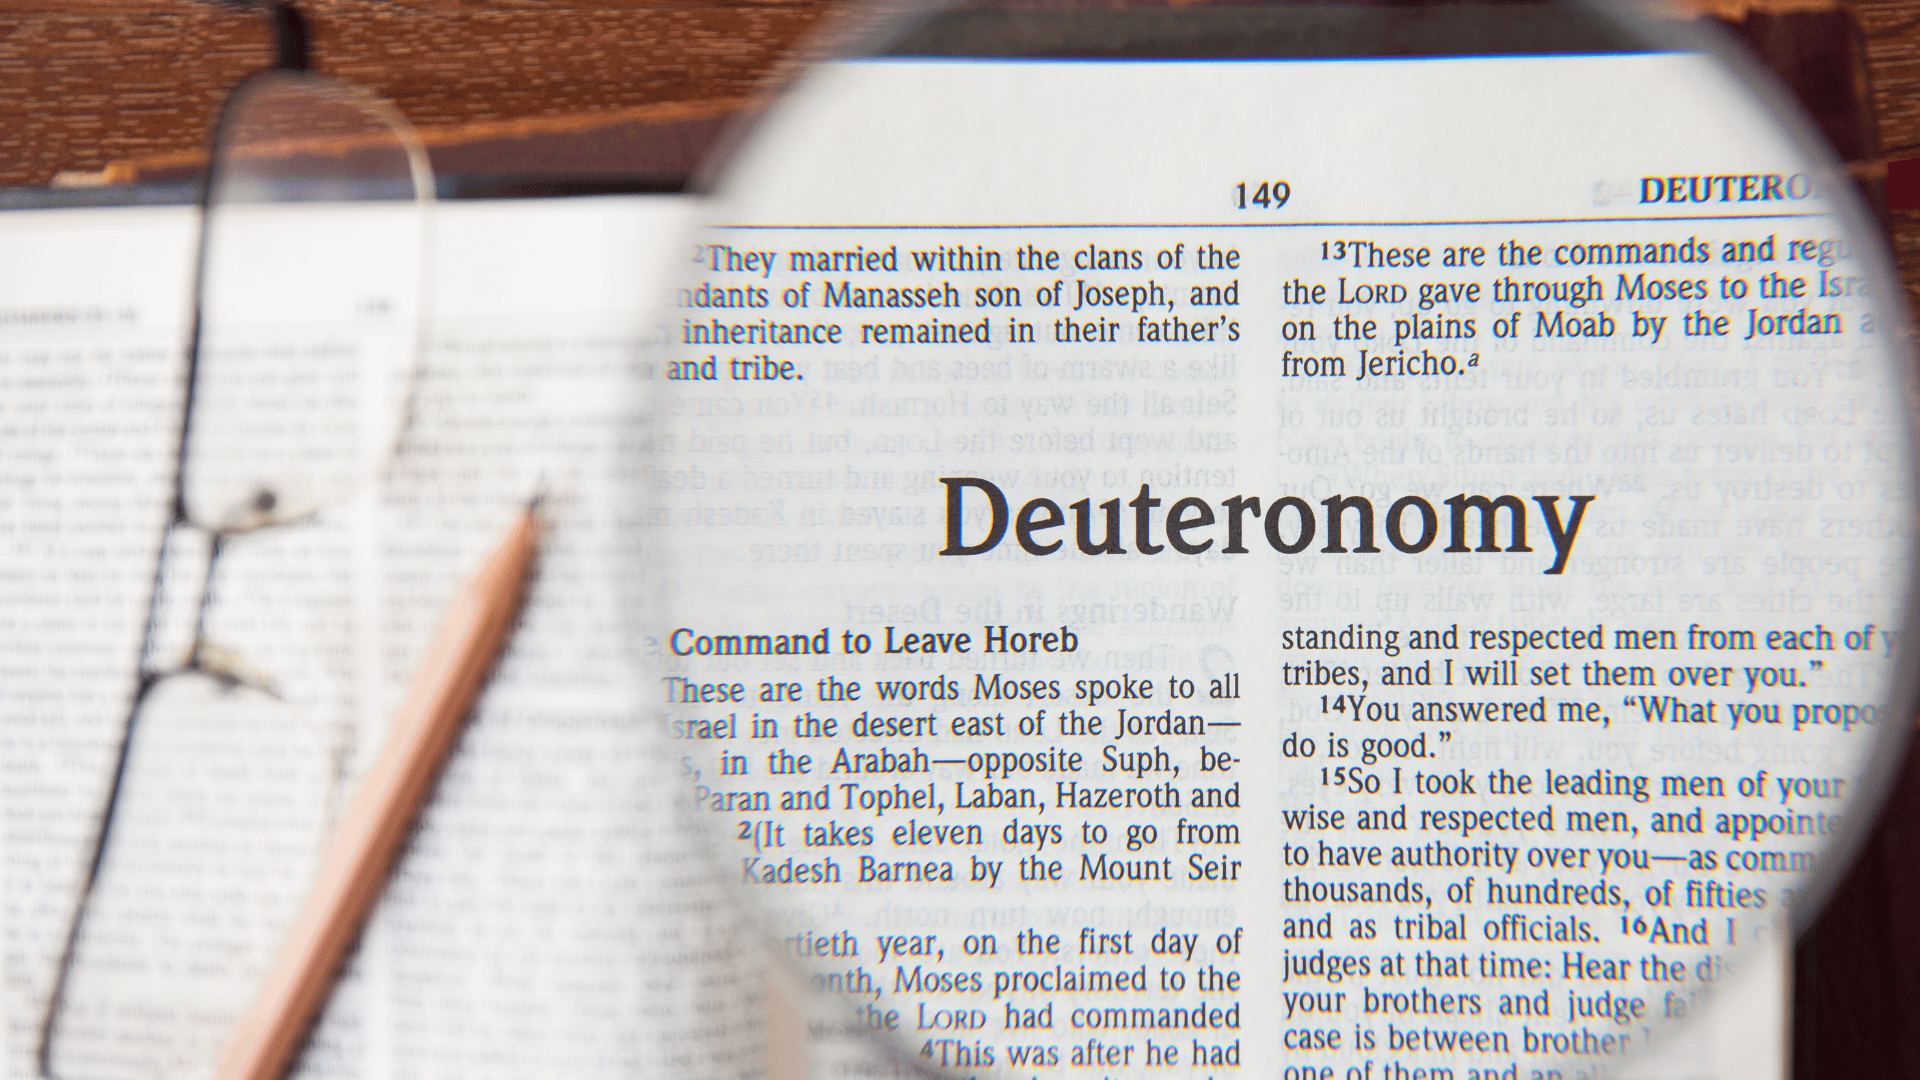 Livro de Deuteronômio em língua inglesa posicionado em uma mesa com um óculos e um lápis ao lado. O nome 'Deuteronômio' está focado por meio de uma lupa.